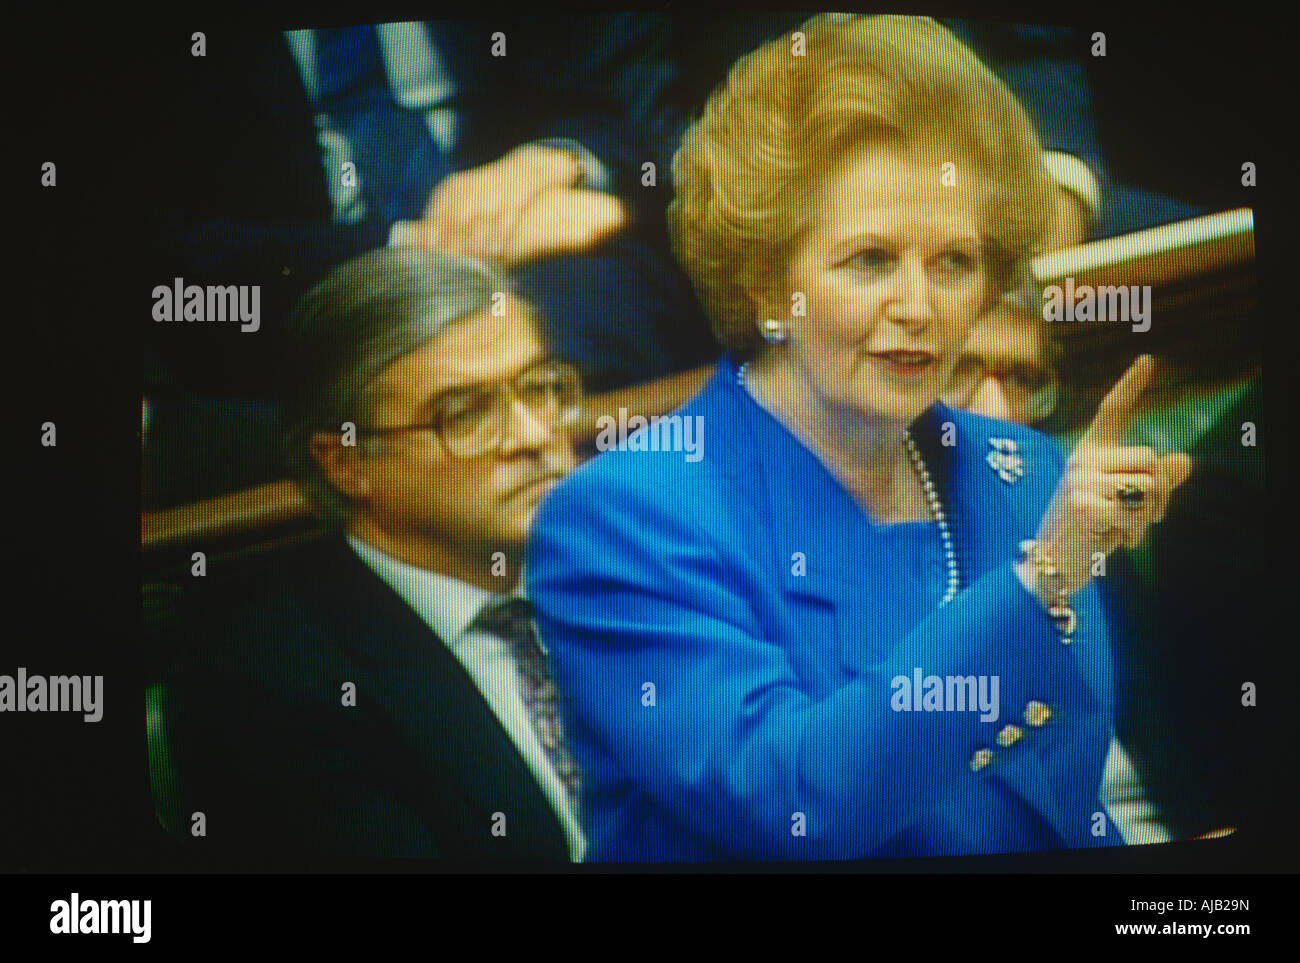 Premierministerin Margaret Thatcher im Fernsehen wedelte mit einem Finger während des Austauschs in der Versand-Box mit Labour-Opposition gesehen Stockfoto